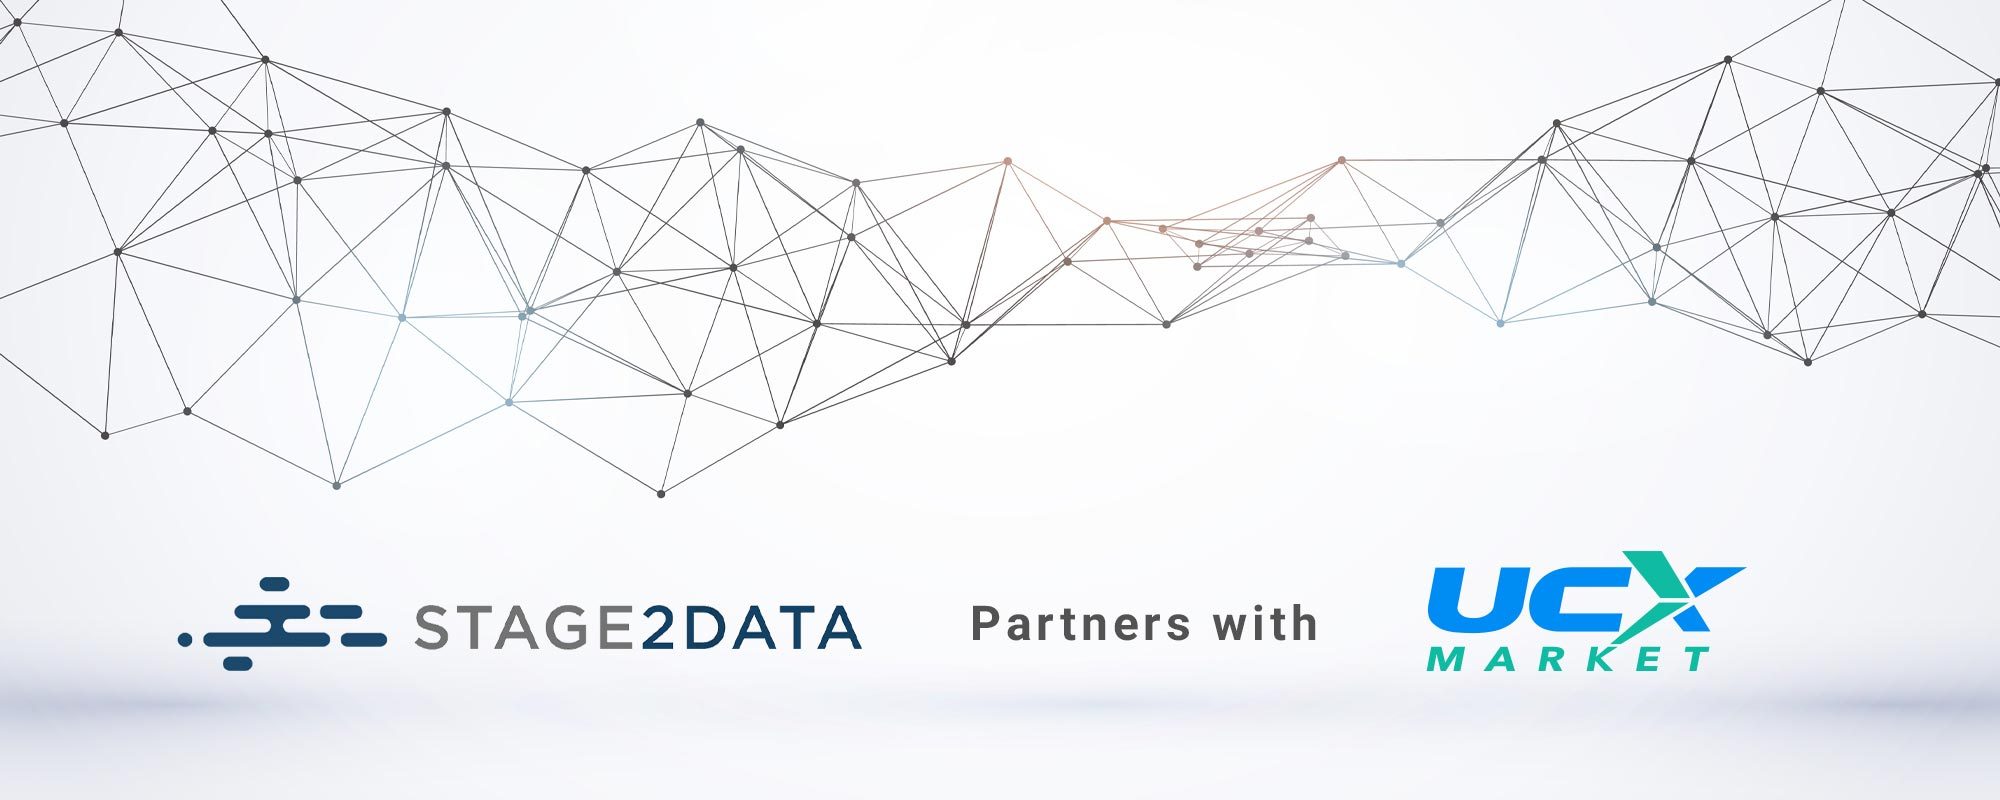 Stage2Data strategic partnership with UCXmarket